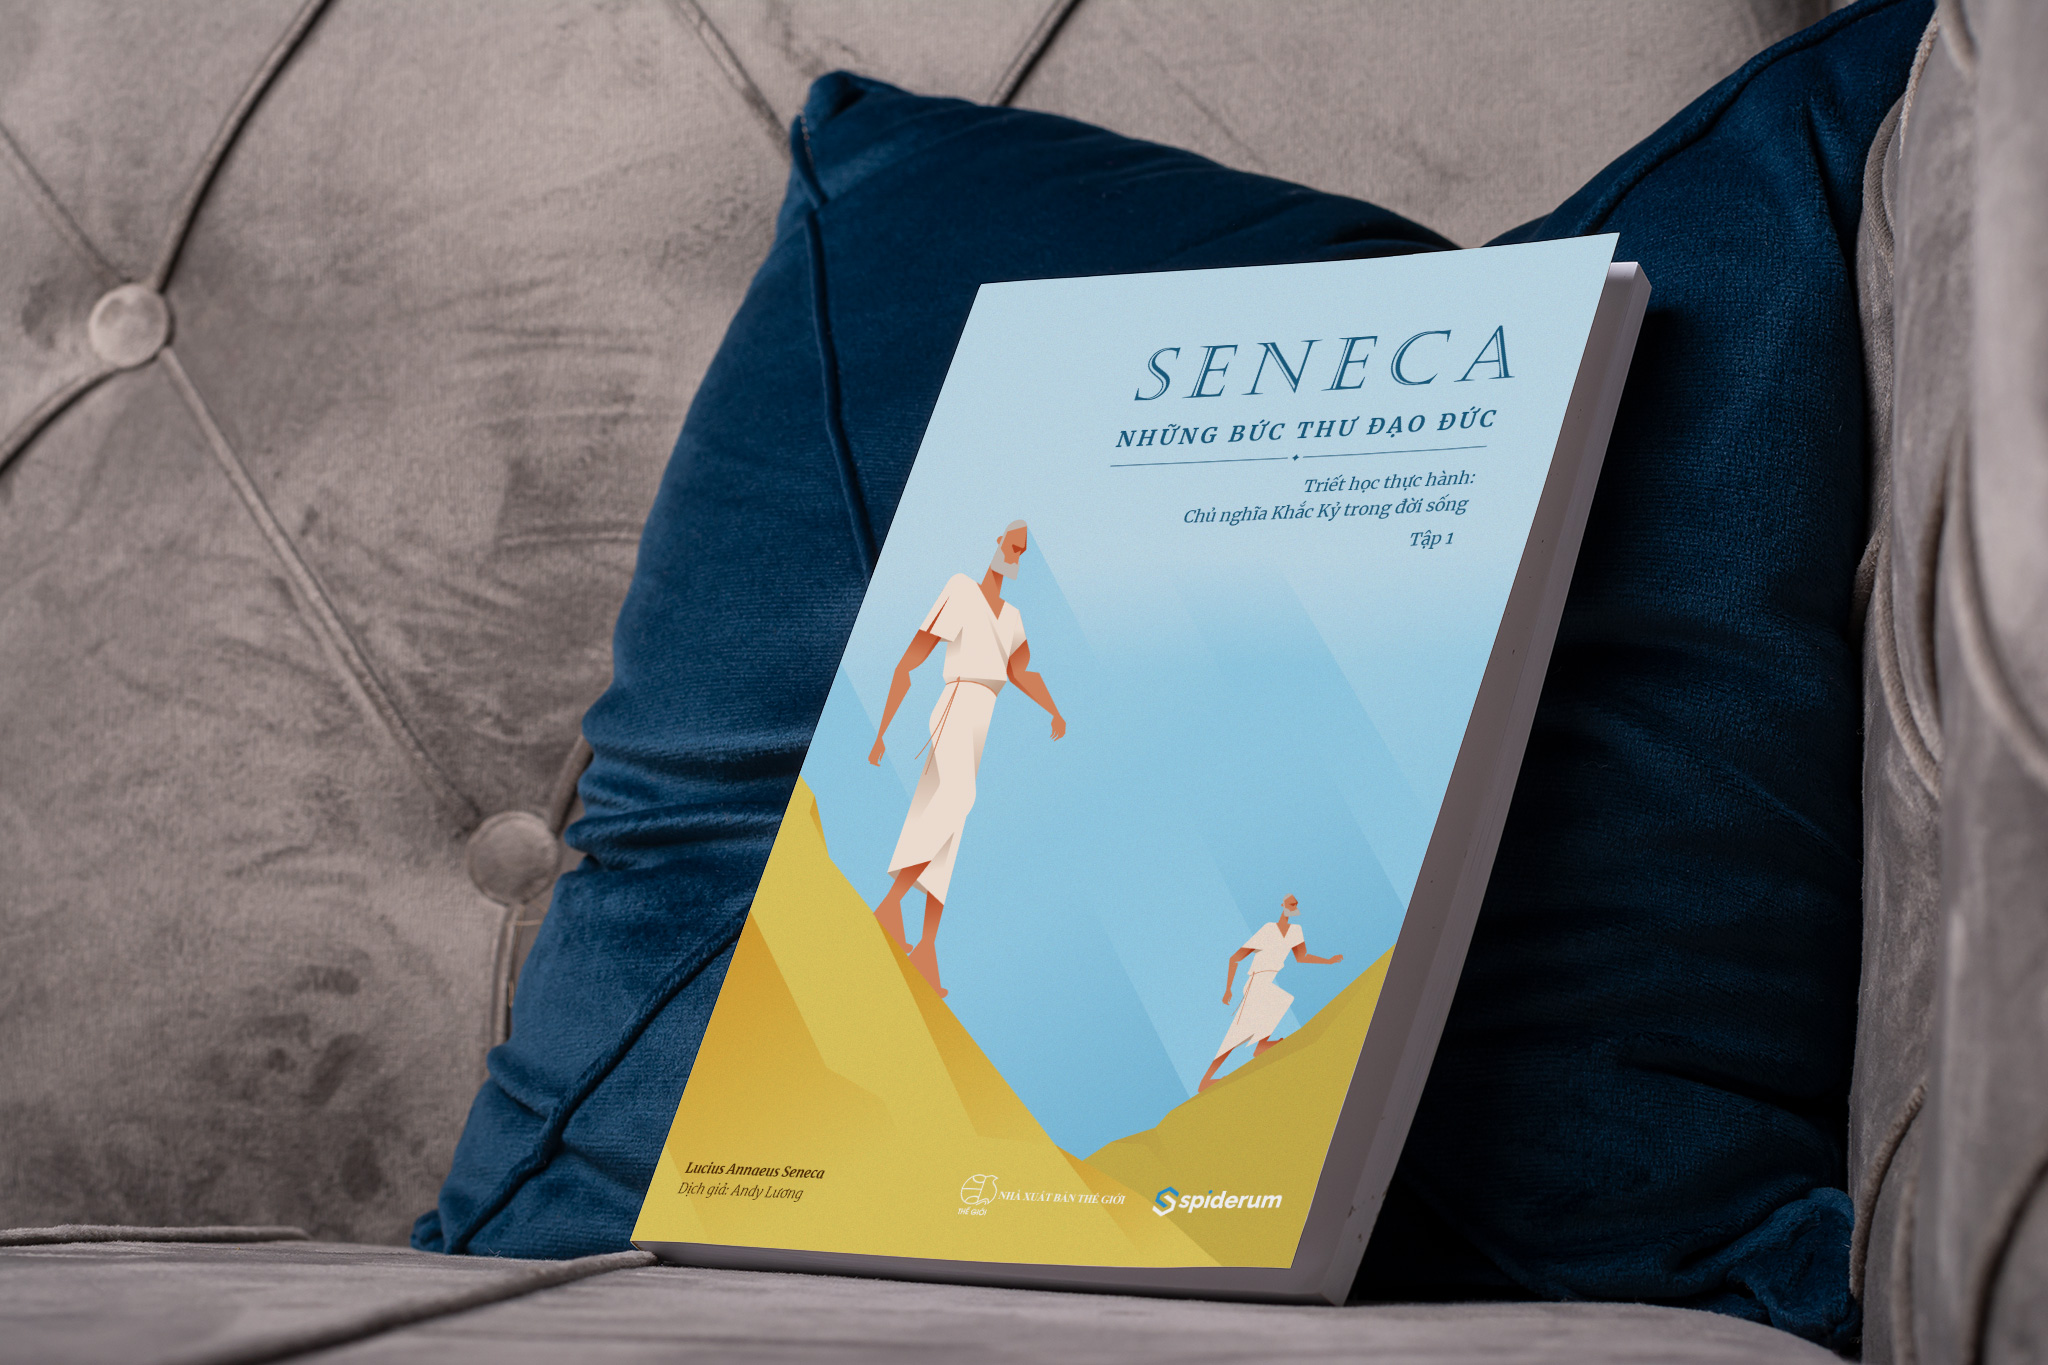 Sách Seneca: Những Bức Thư Đạo Đức – Chủ nghĩa Khắc kỷ trong đời sống - Tập 1